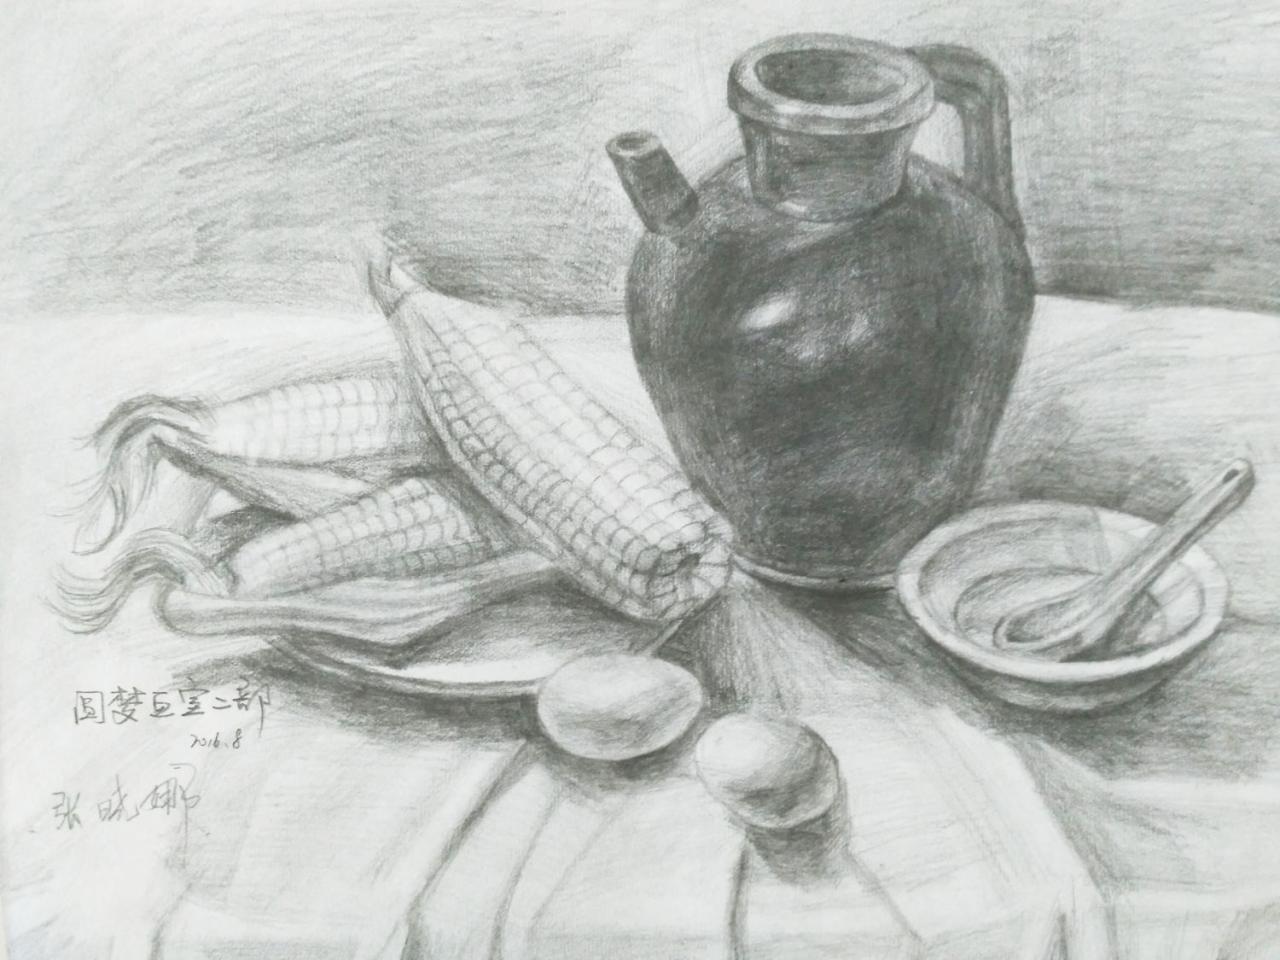 陶罐、碗、勺、鸡蛋、玉米、盘子 静物素描 张晓娜画